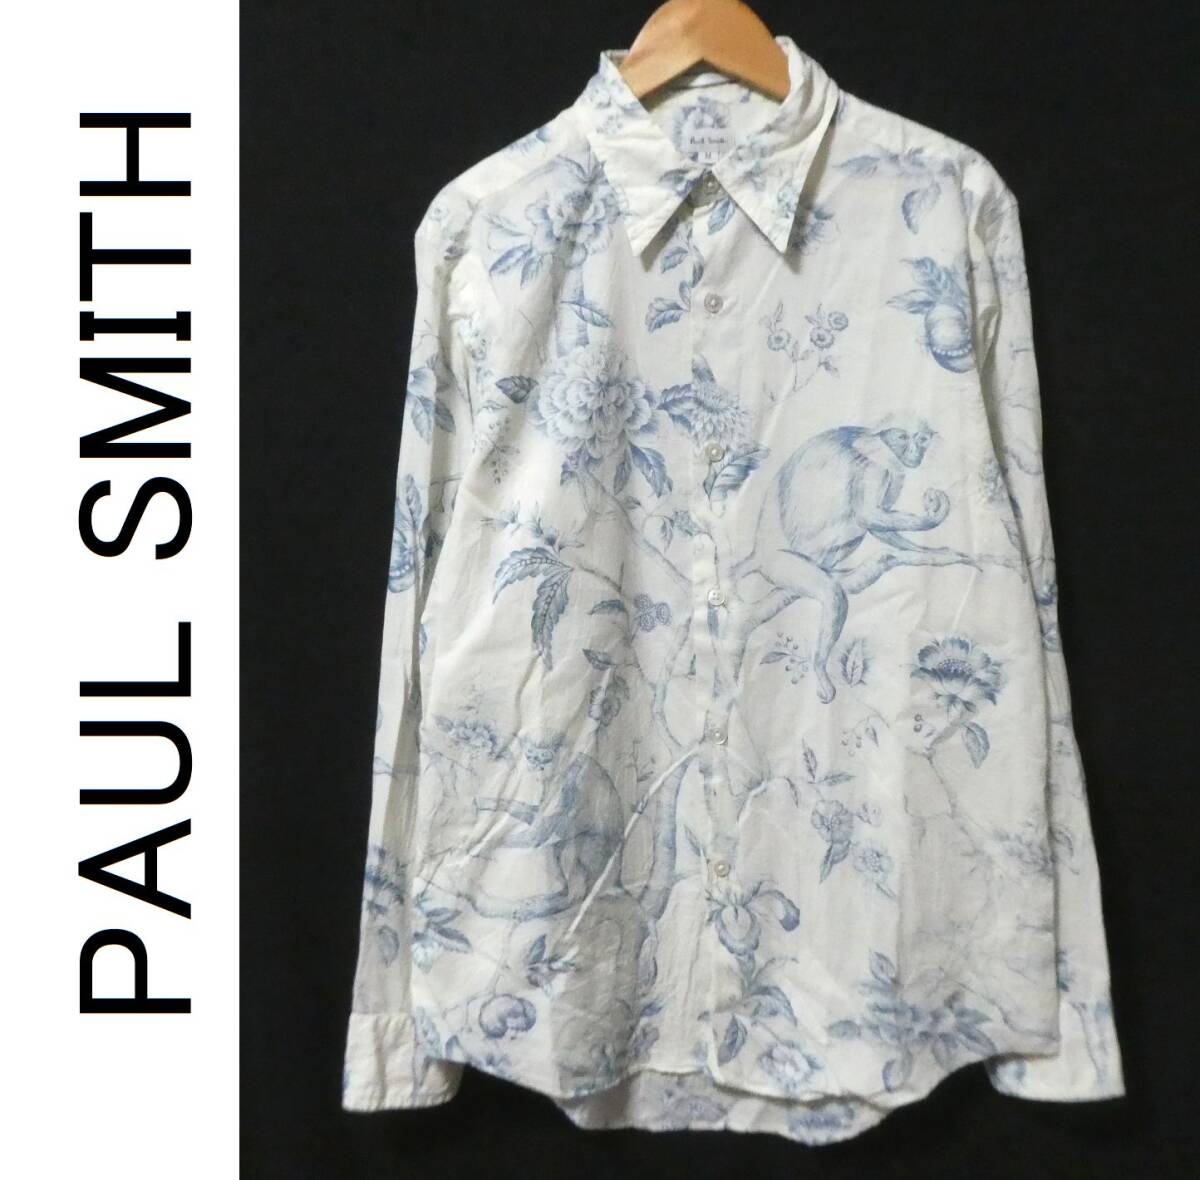 正規品 PAUL SMITH ポールスミス 総柄 花柄 猿柄 長袖シャツ M 白 ホワイト の画像1